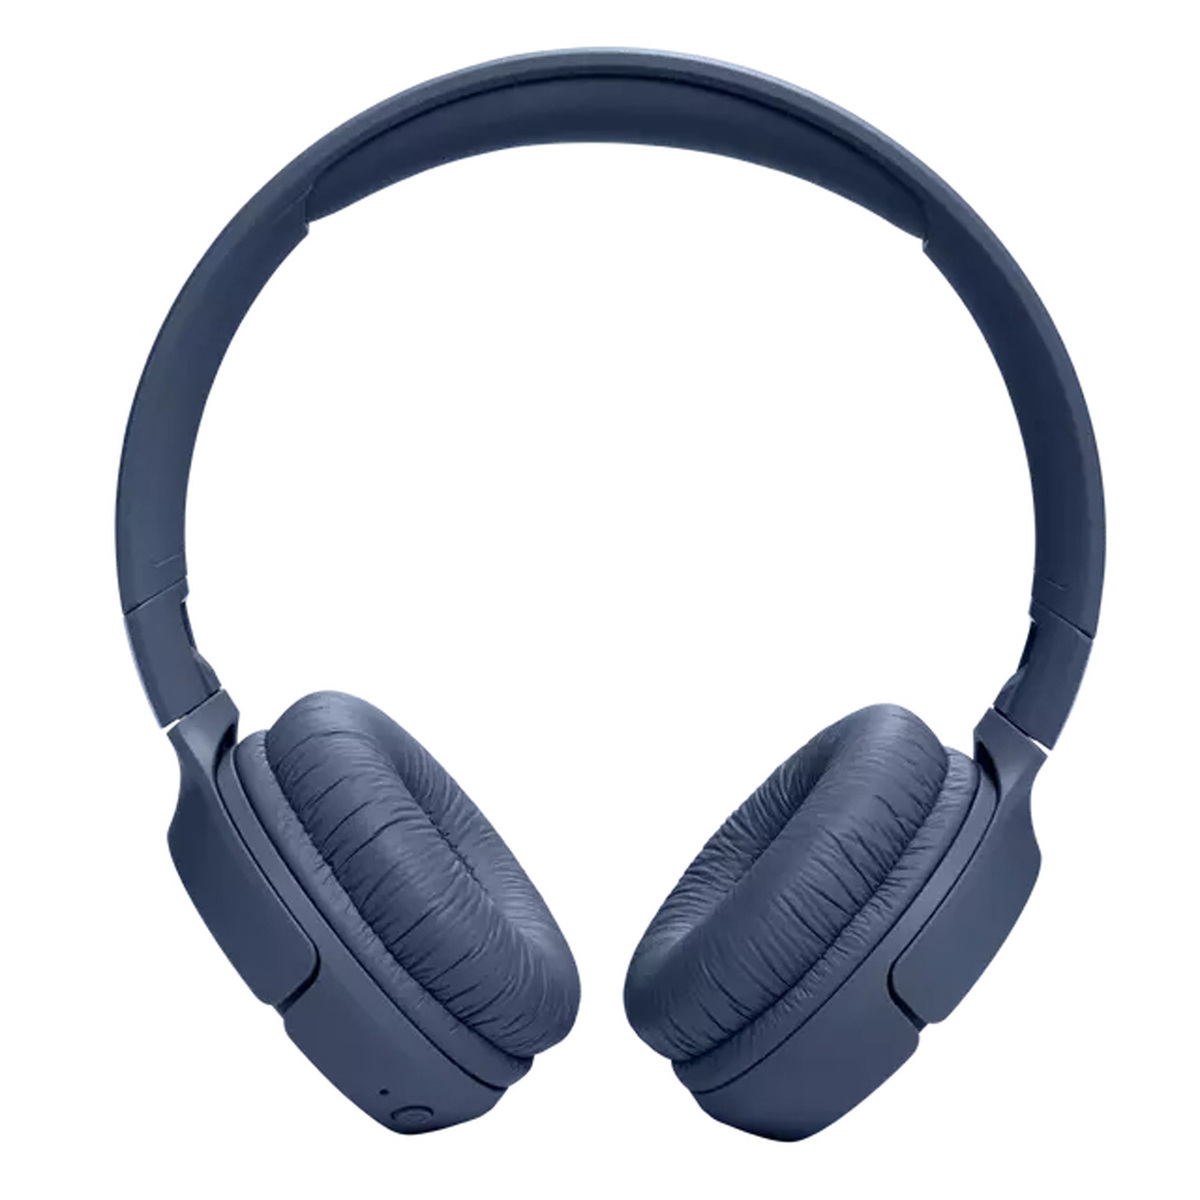 جي بي إل سماعة تون 520بلوتوث اللاسلكية على الاذن باللون الأزرق